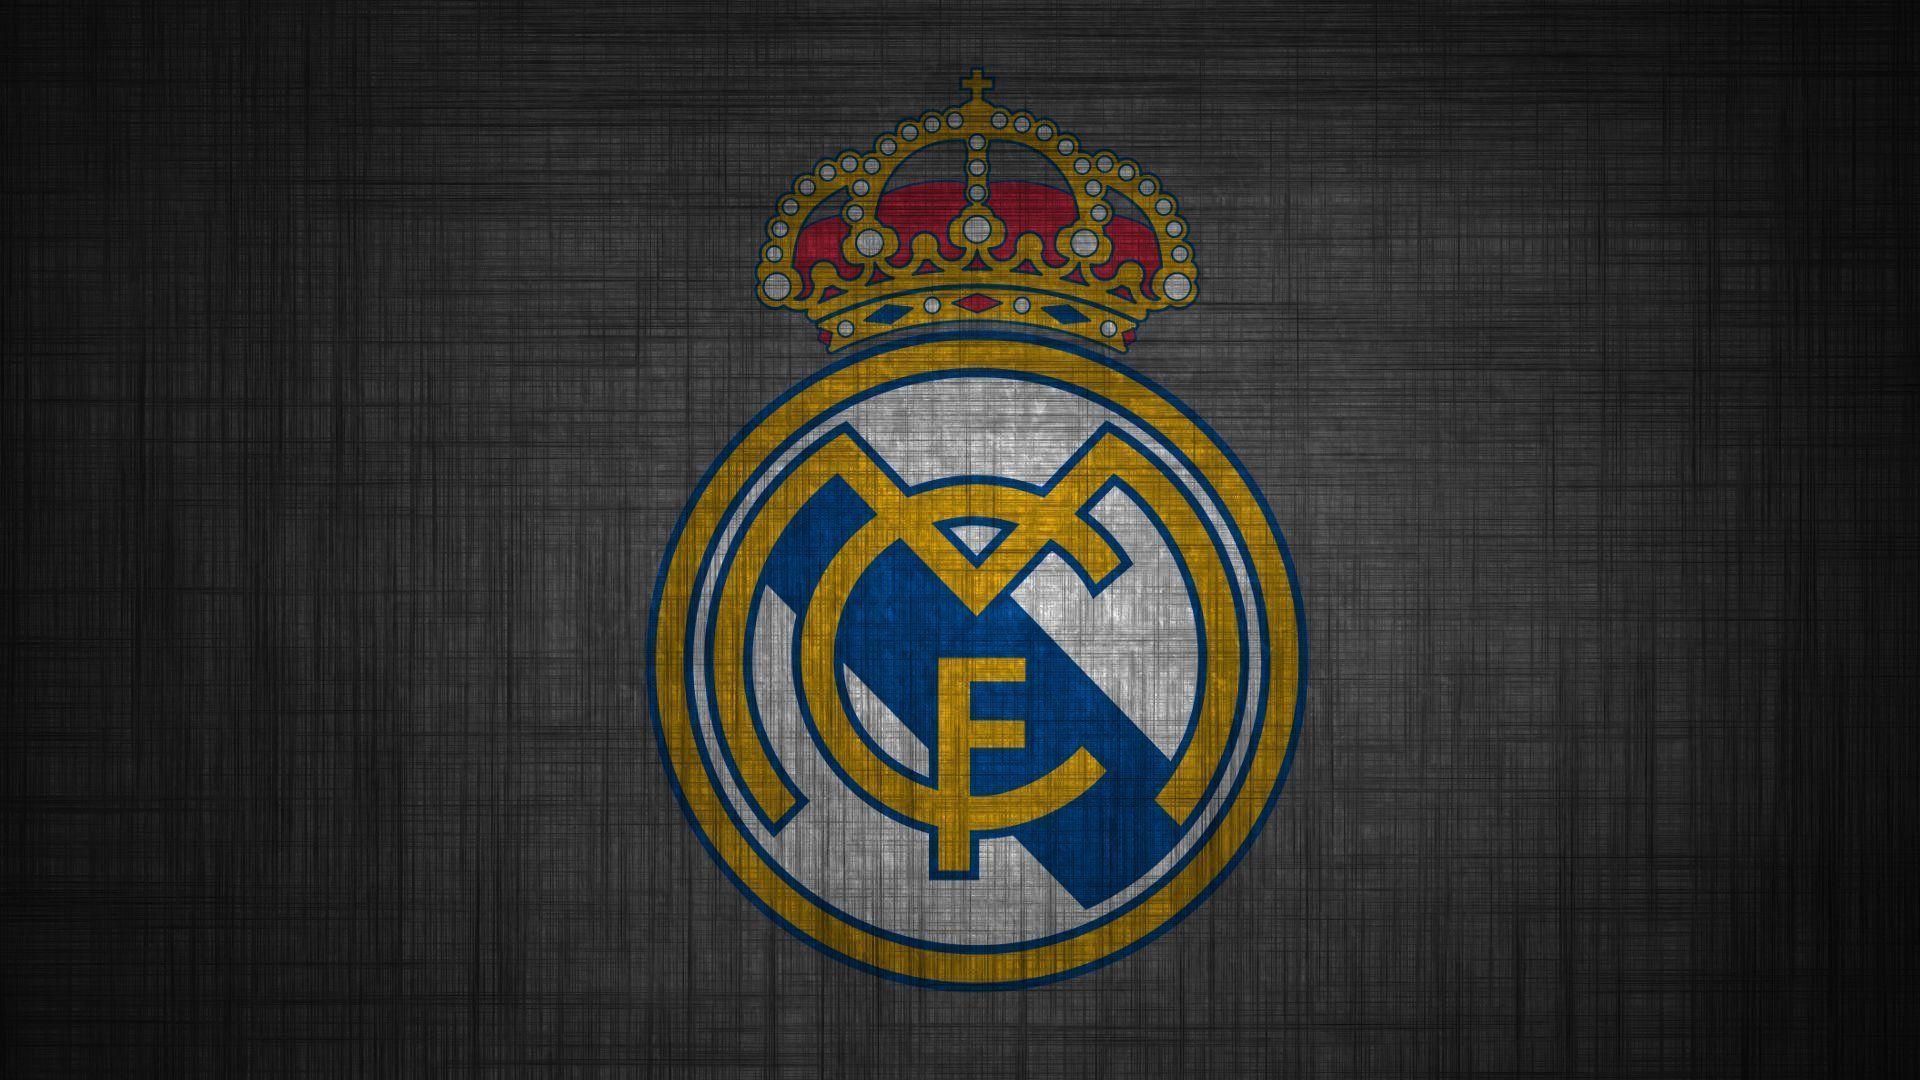 Bạn đang tìm kiếm hình nền độc đáo, chất lượng 4K để thể hiện tình yêu của mình dành cho Real Madrid? Hãy để chúng tôi giúp bạn thỏa mãn niềm đam mê đó!